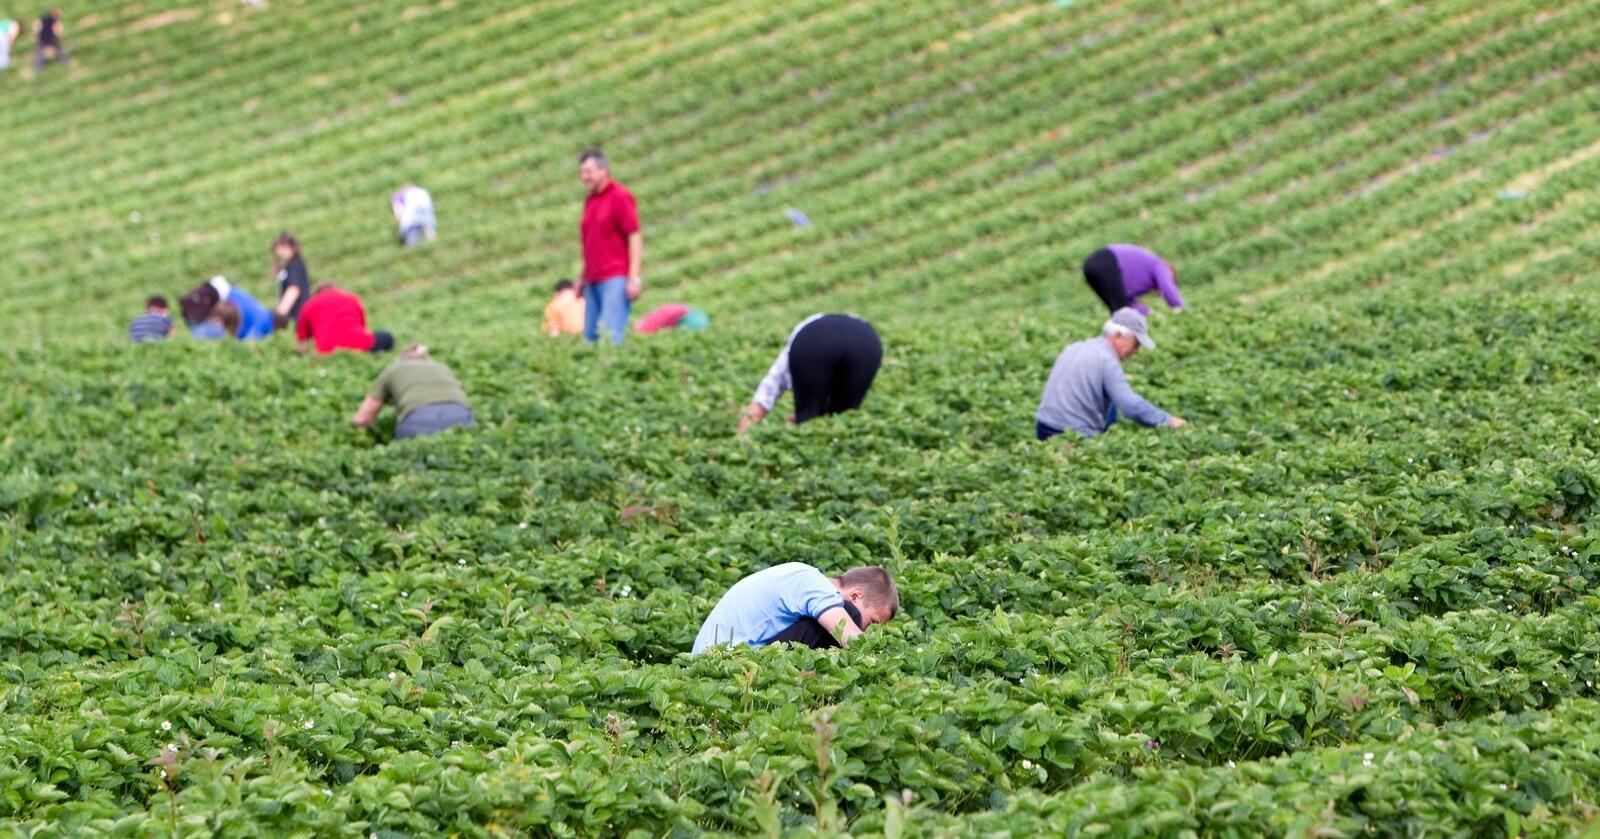 Britiske jobbsøkere klager på dårlige arbeidsforhold innenfor grøntnæringa. Bildet er fra Egge Gård i Lier, hvor det var polske jordbærplukere. Foto: Gorm Kallestad / Scanpix